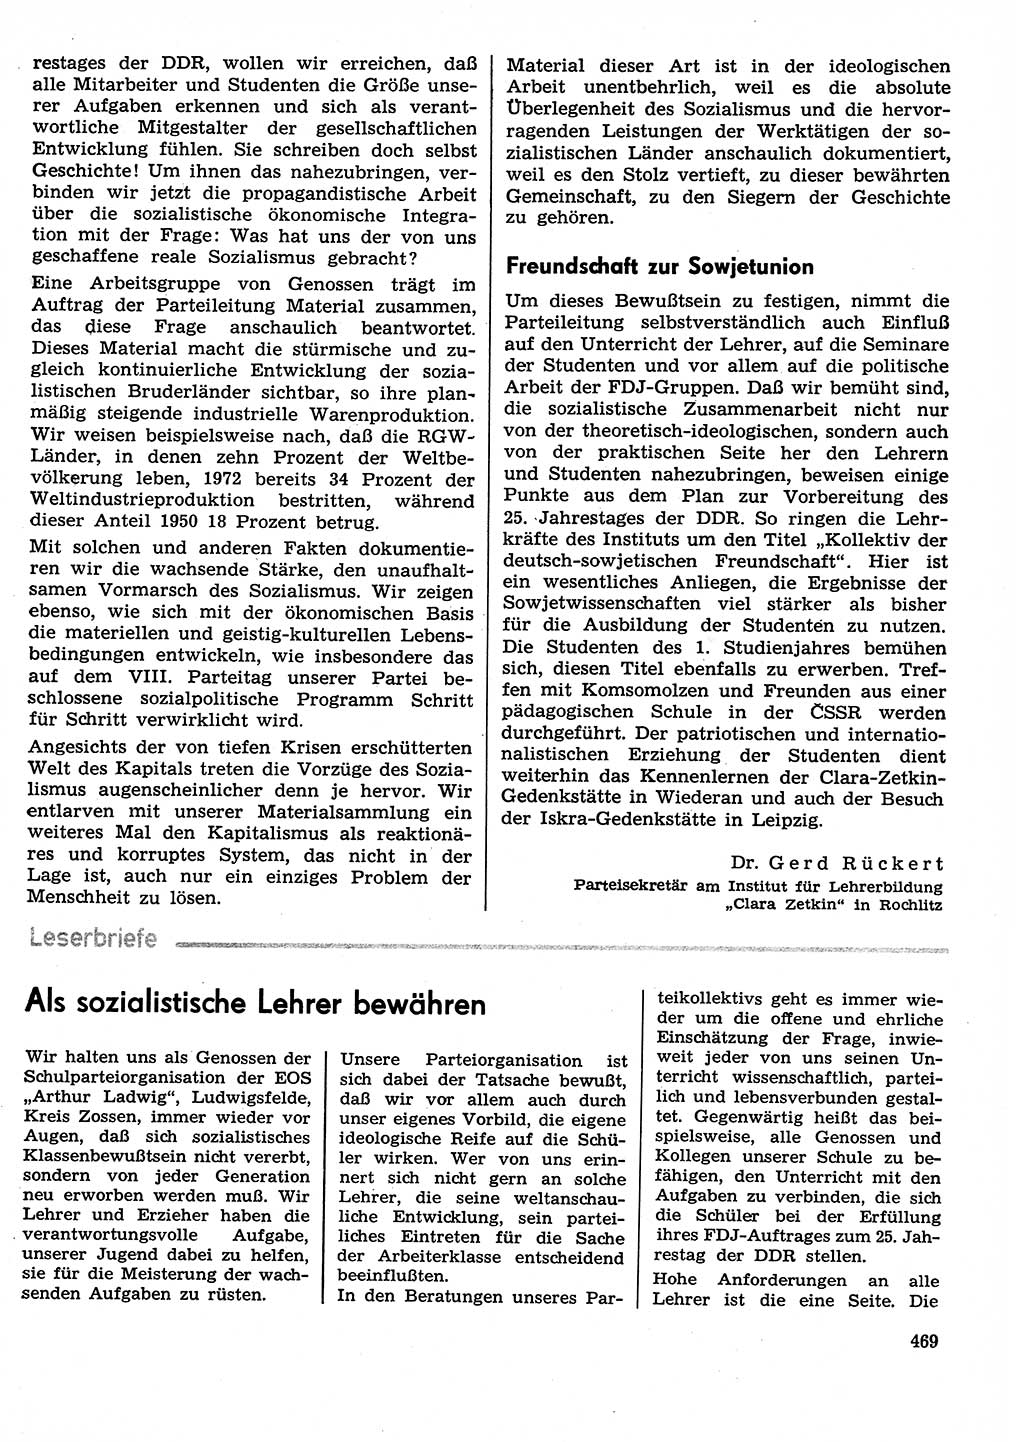 Neuer Weg (NW), Organ des Zentralkomitees (ZK) der SED (Sozialistische Einheitspartei Deutschlands) für Fragen des Parteilebens, 29. Jahrgang [Deutsche Demokratische Republik (DDR)] 1974, Seite 469 (NW ZK SED DDR 1974, S. 469)